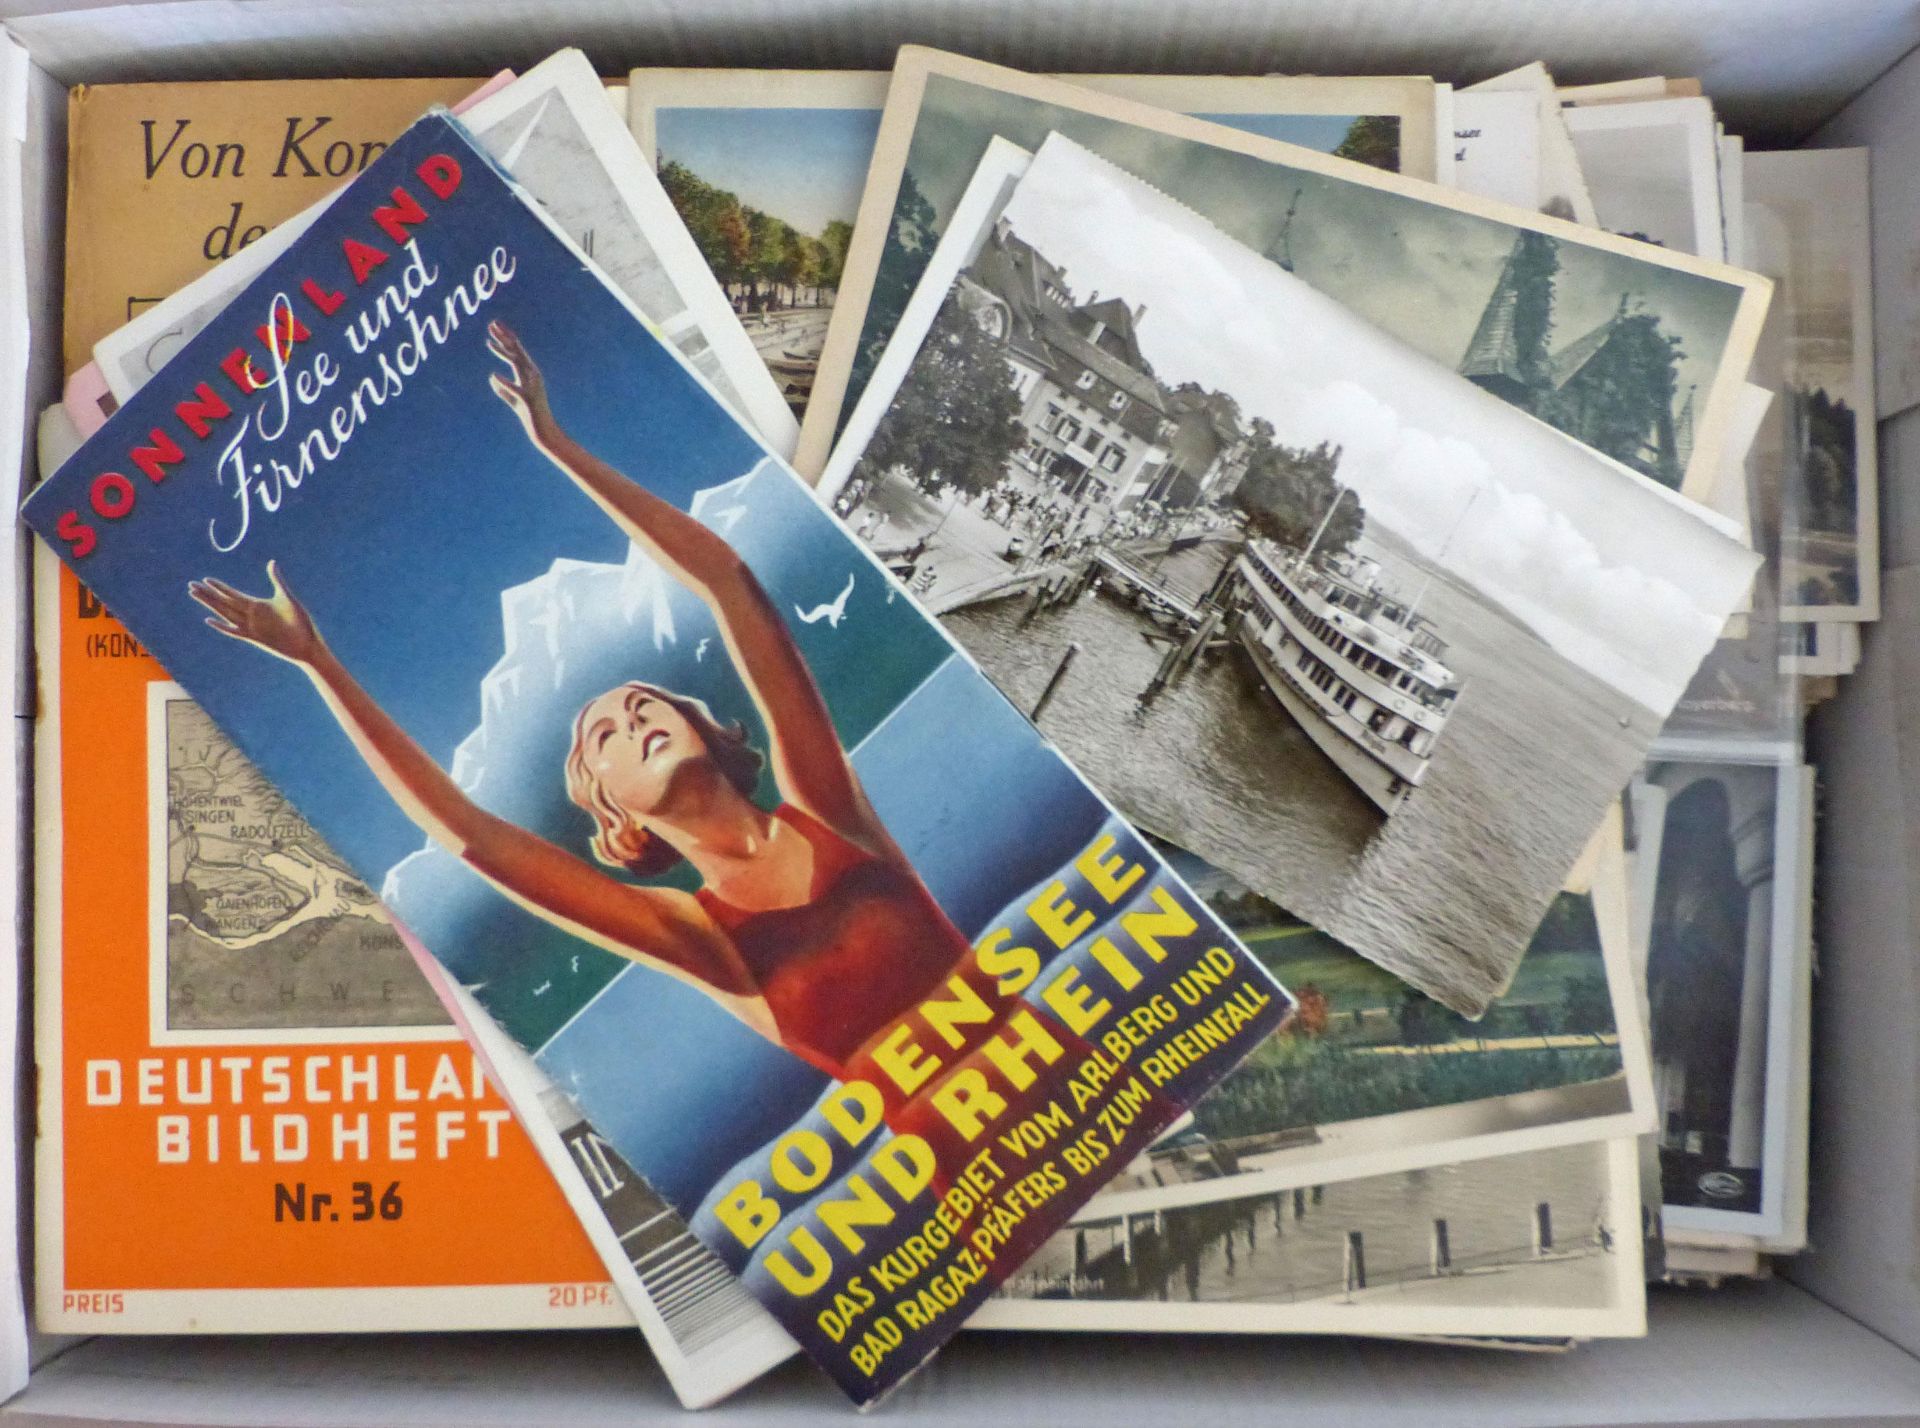 WUKI Bodensee Partie mit einigen Hundert Ansichtskarten Bücher Prospekte Reiseführer usw. spannendes